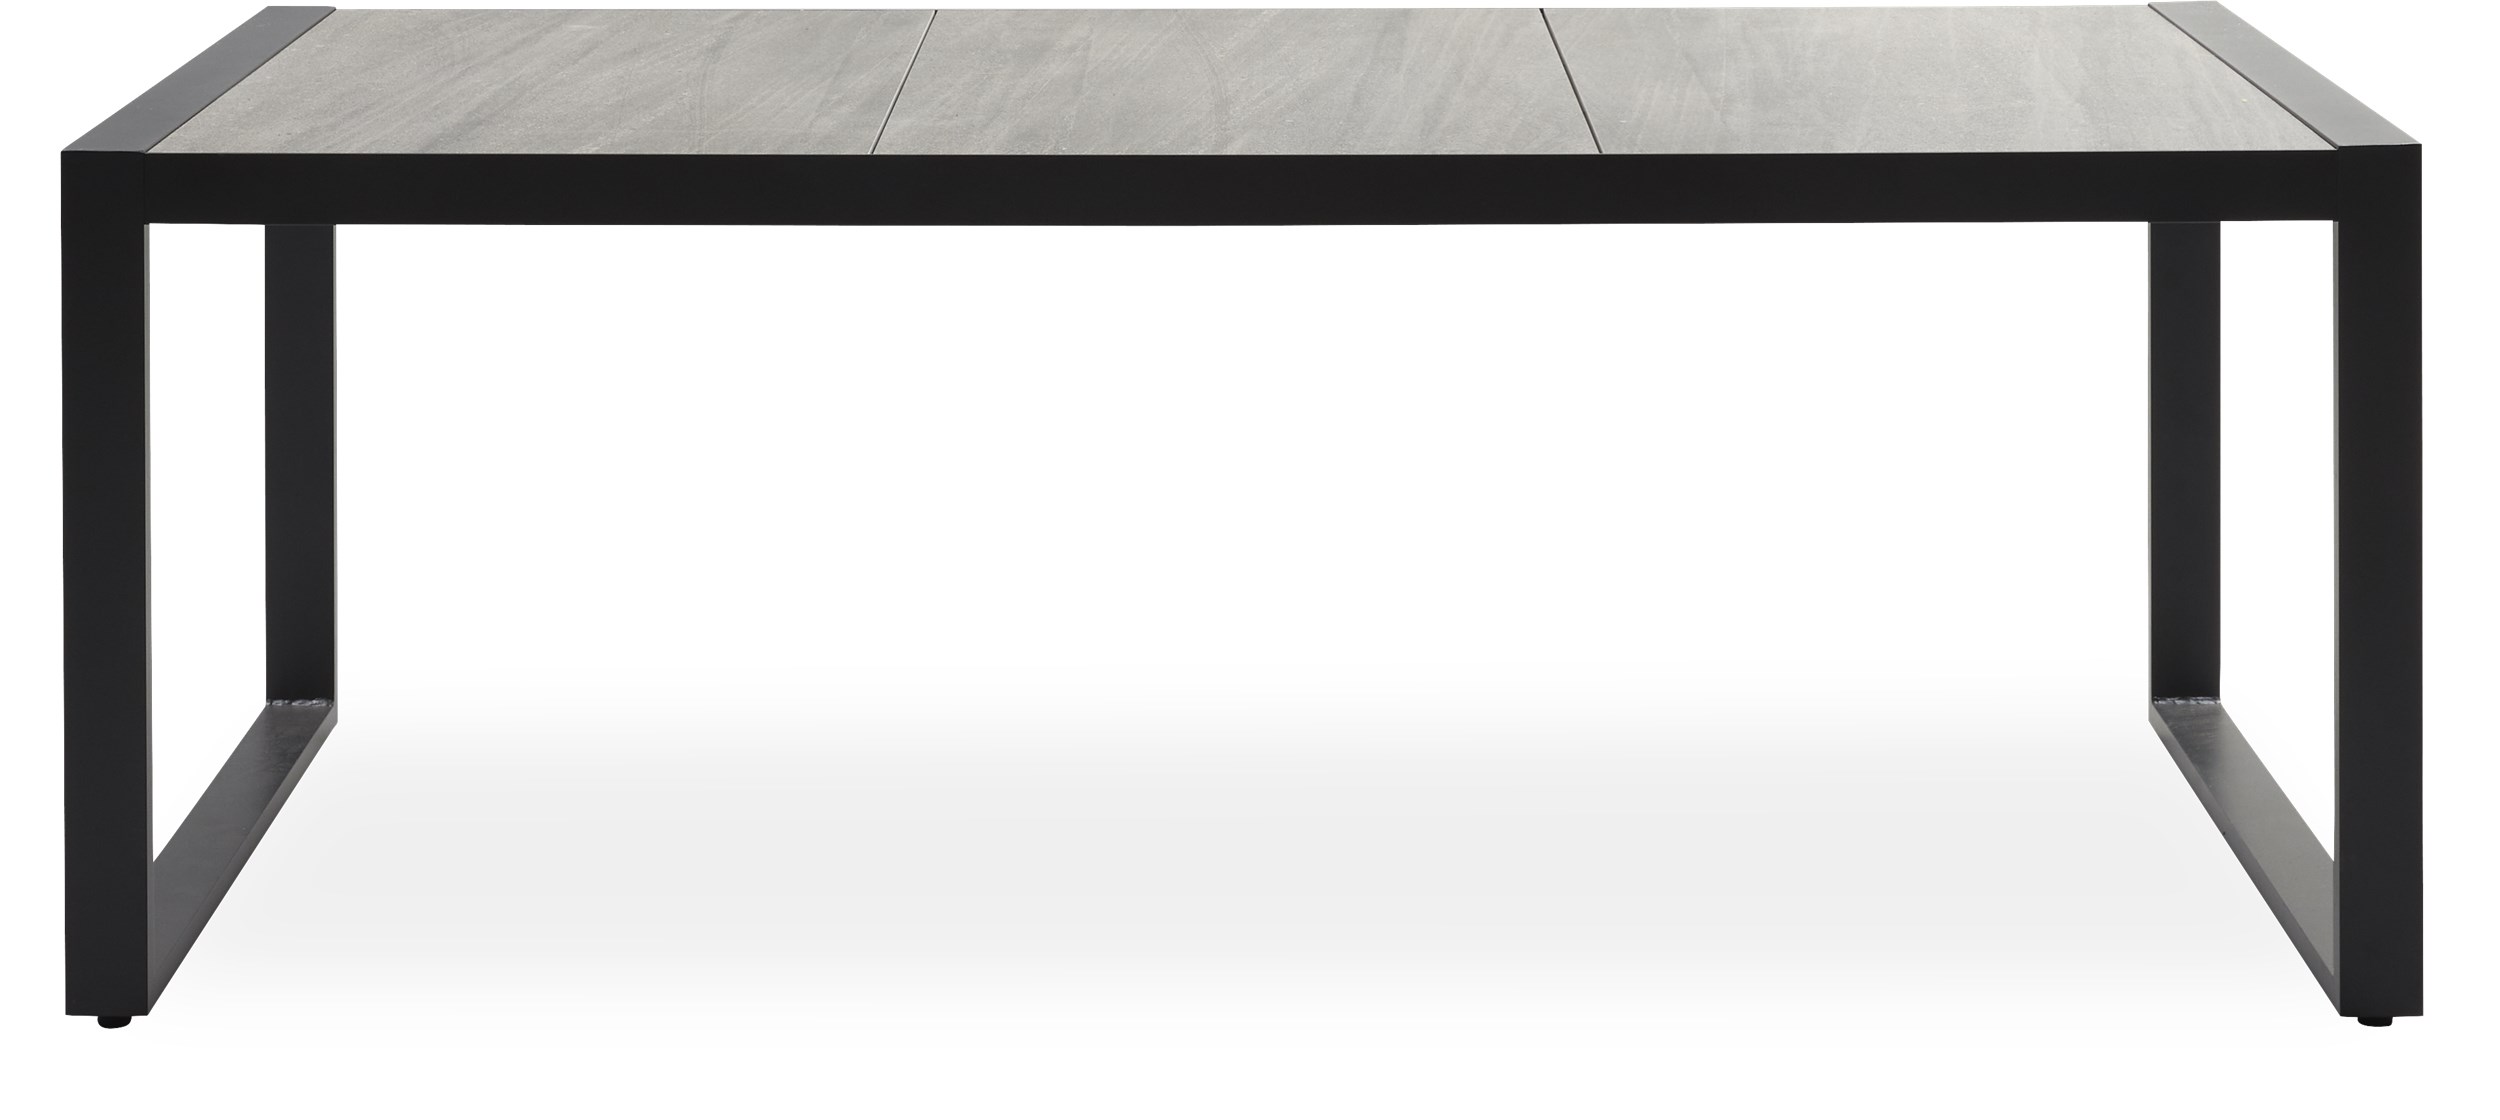 Seri Trädgårdsbord 195 x 90 x 74 cm - Bordsskiva i grå keramik och stomme i svart pulverlackerad aluminium